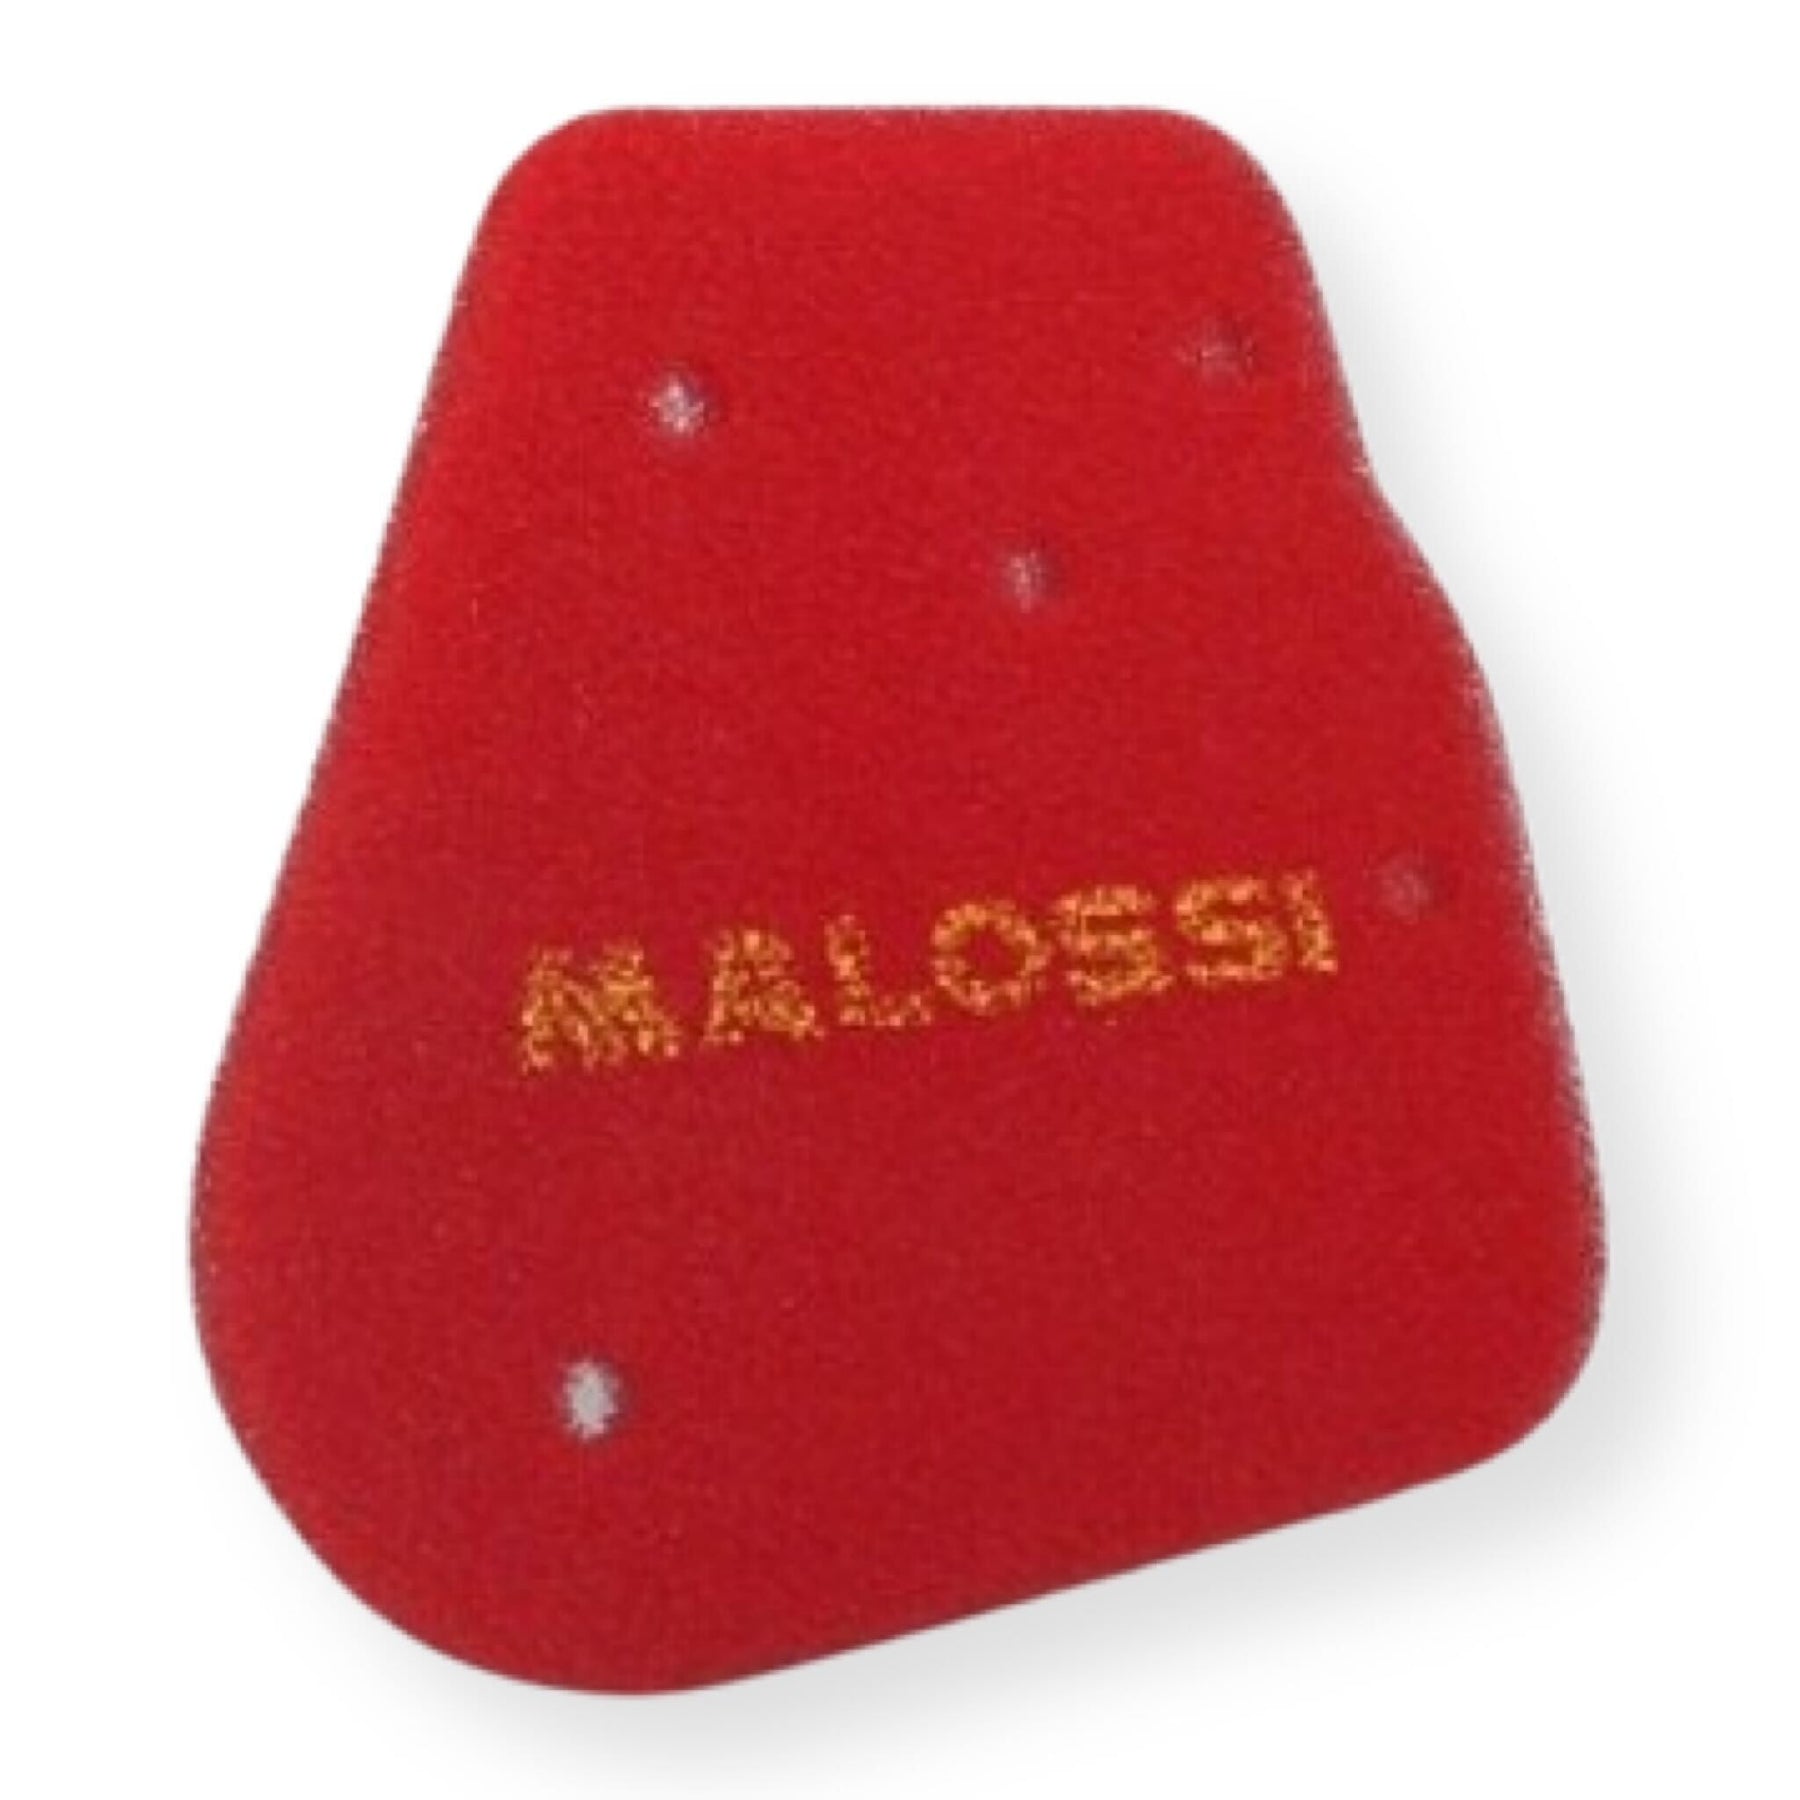 Benelli CPI ATU Baotian Generic Keeway Malossi Red Sponge Air Filter